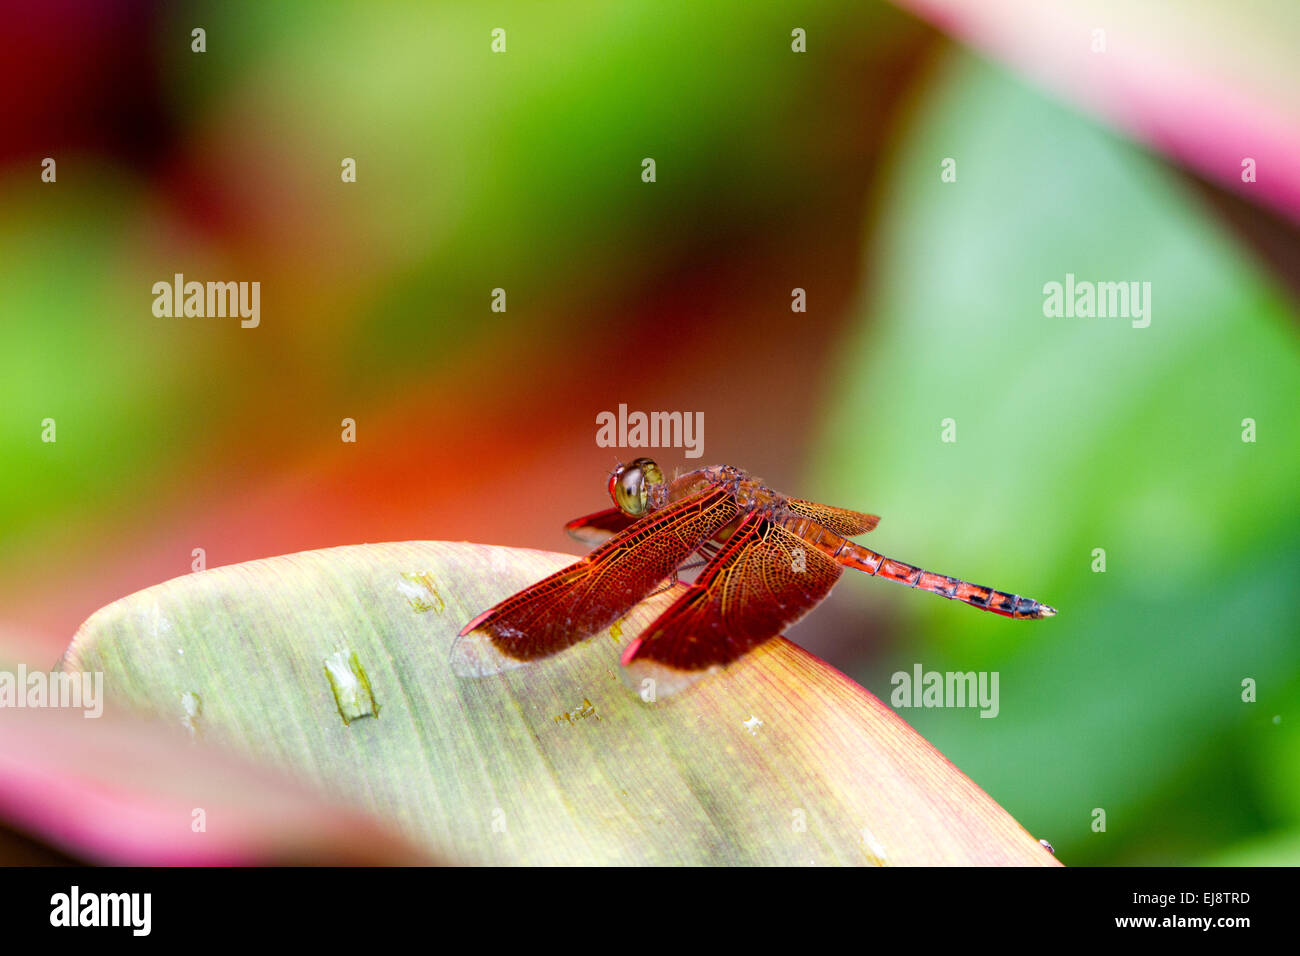 Tropico al dragonfly (Neurothermis terminata) Foto Stock